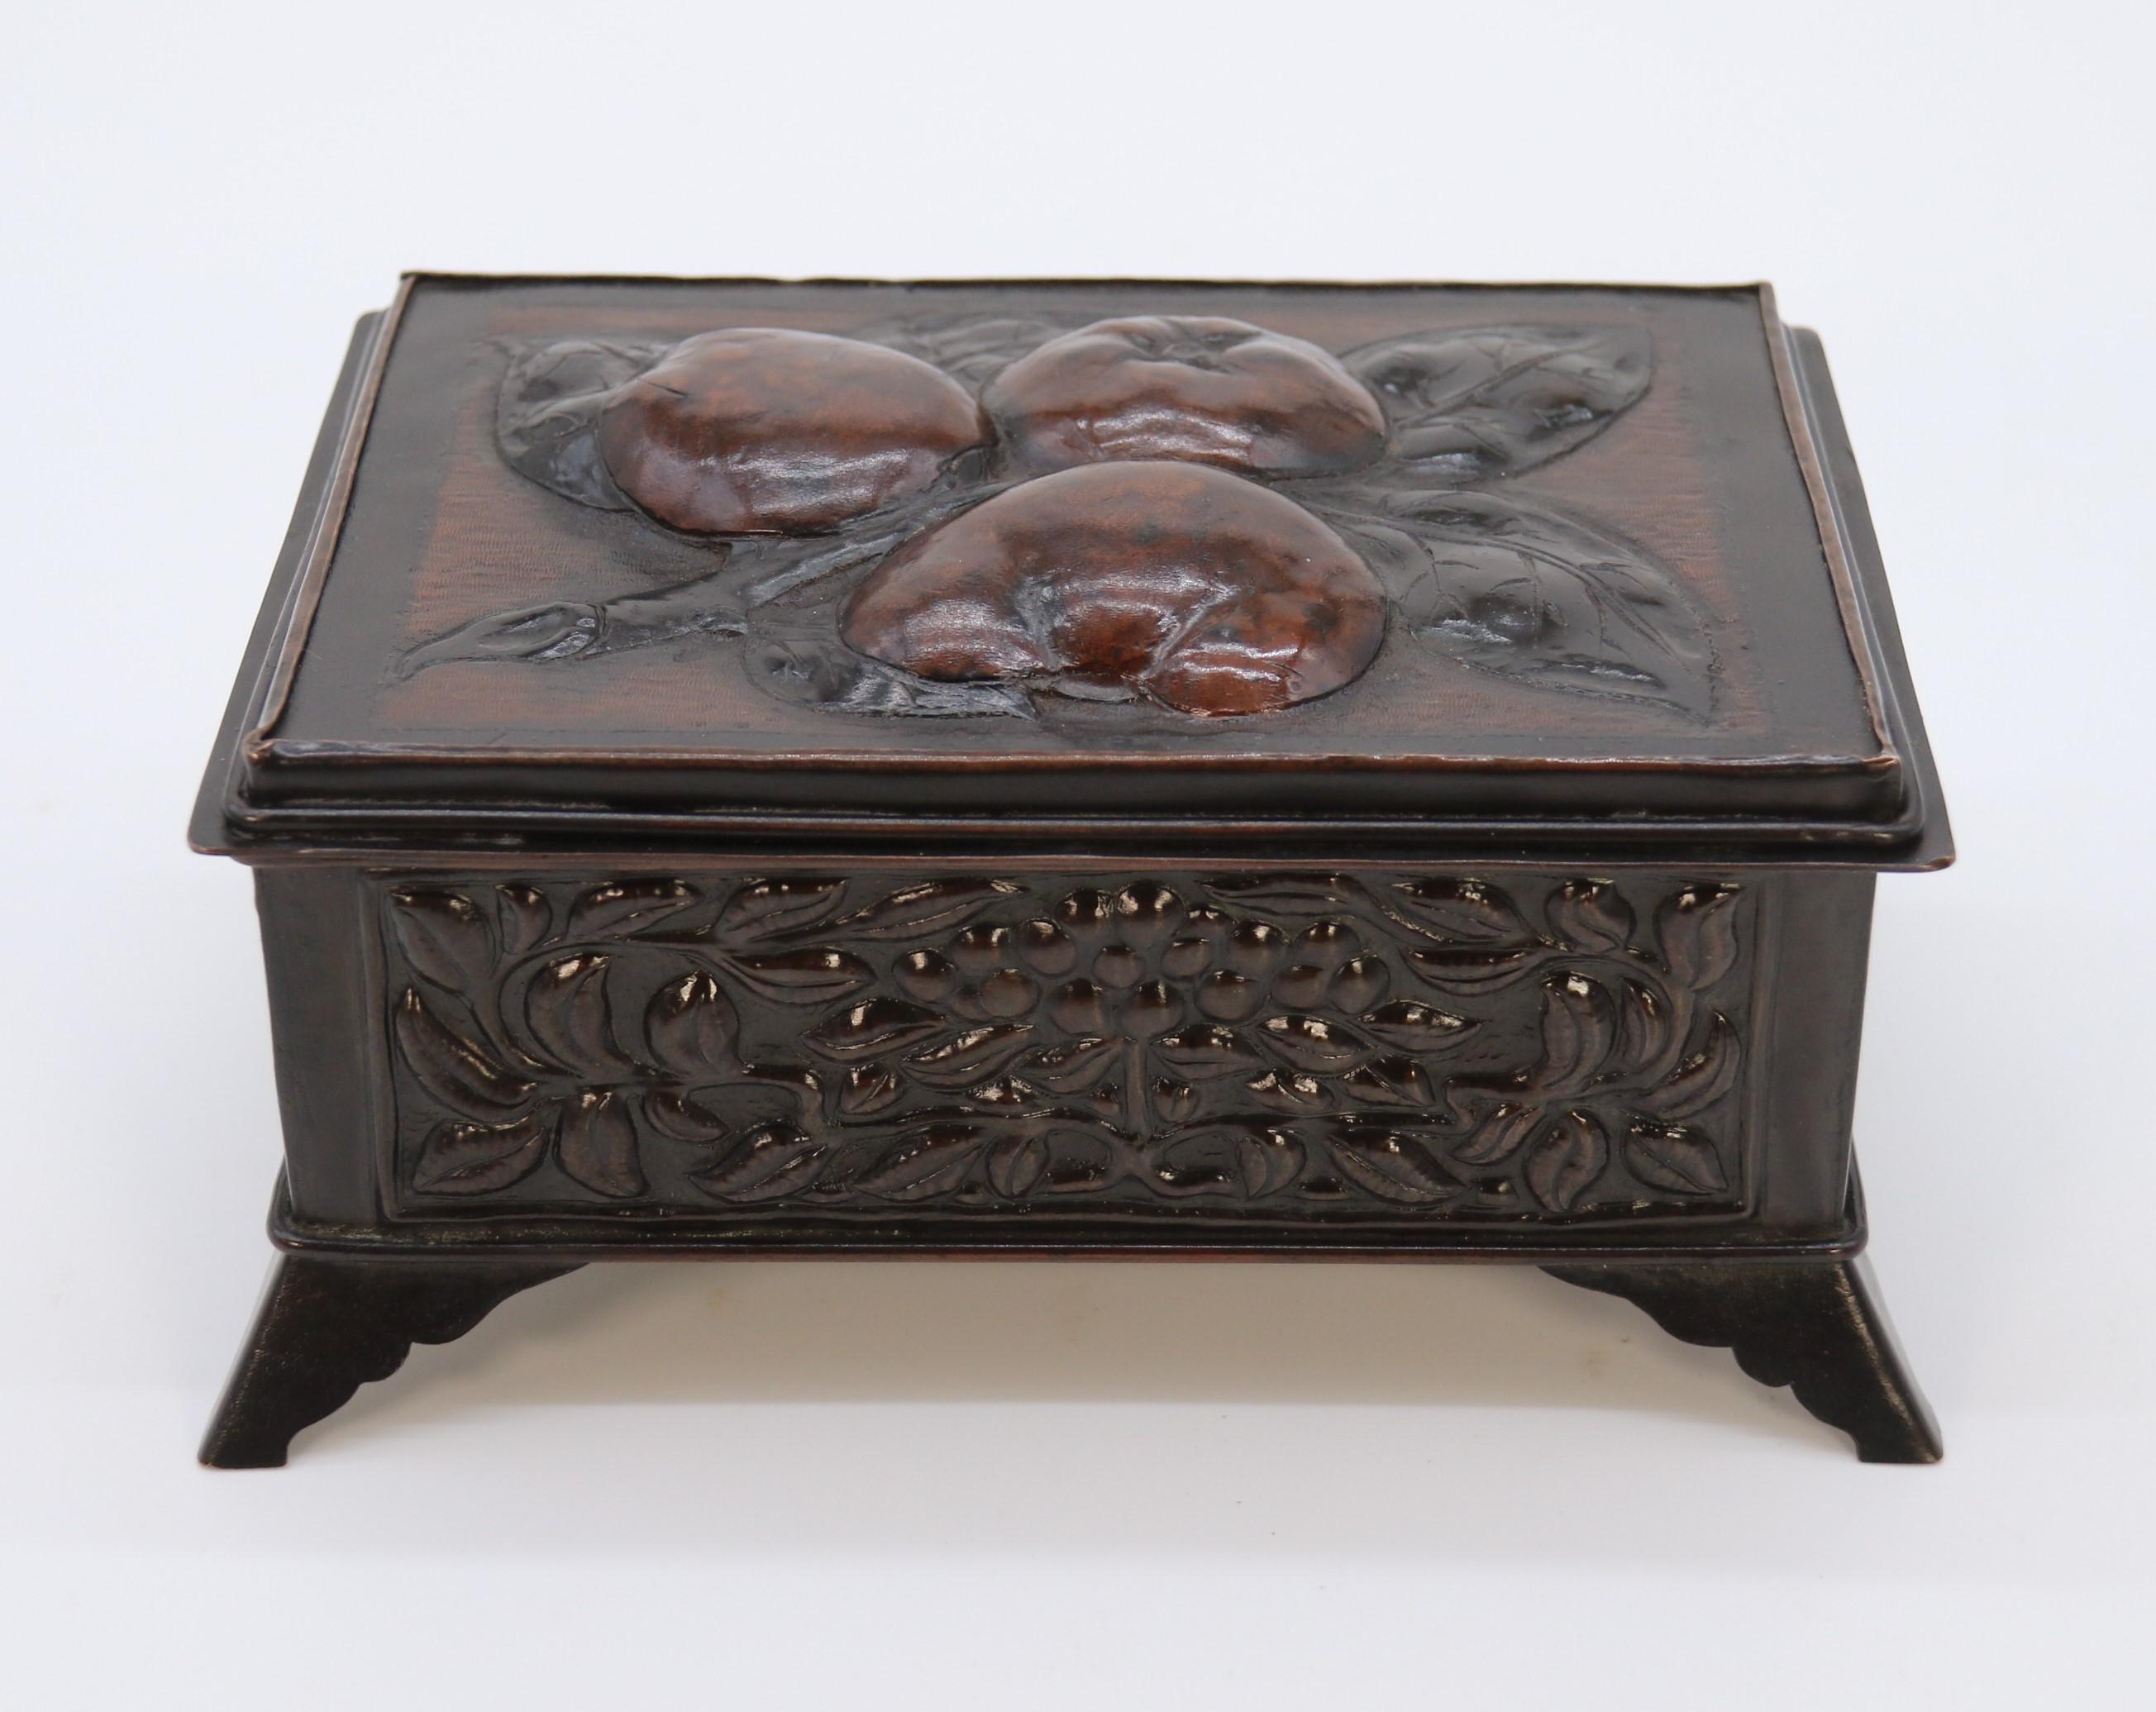 Diese sehr stilvolle und scharfkantig ausgeführte handgefertigte Kupferdose stammt aus dem späten 19. Jahrhundert. Er steht auf gespreizten, geformten Klammerfüßen, die am Sockel befestigt sind, der mit einer hübschen kleinen gerollten Kante